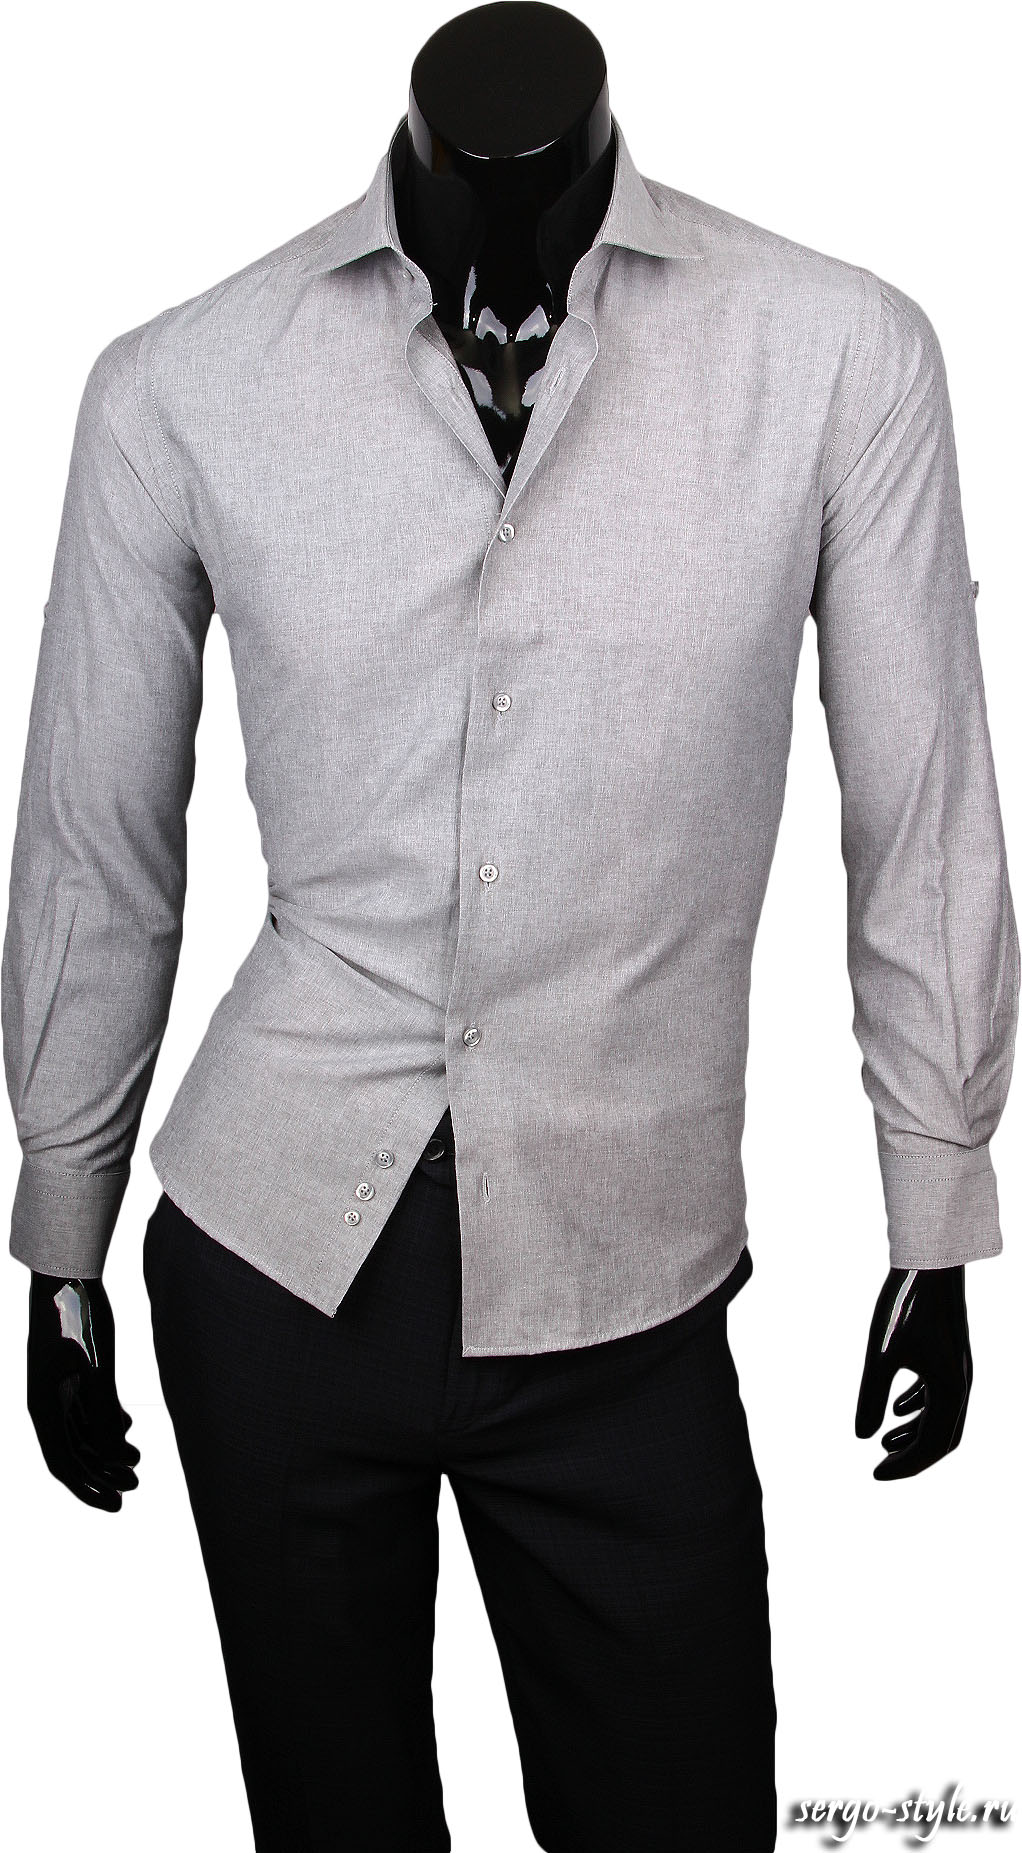 Рубашка Paolo Bertolucci приталенная цвет серый однотонный купить в Москве недорого